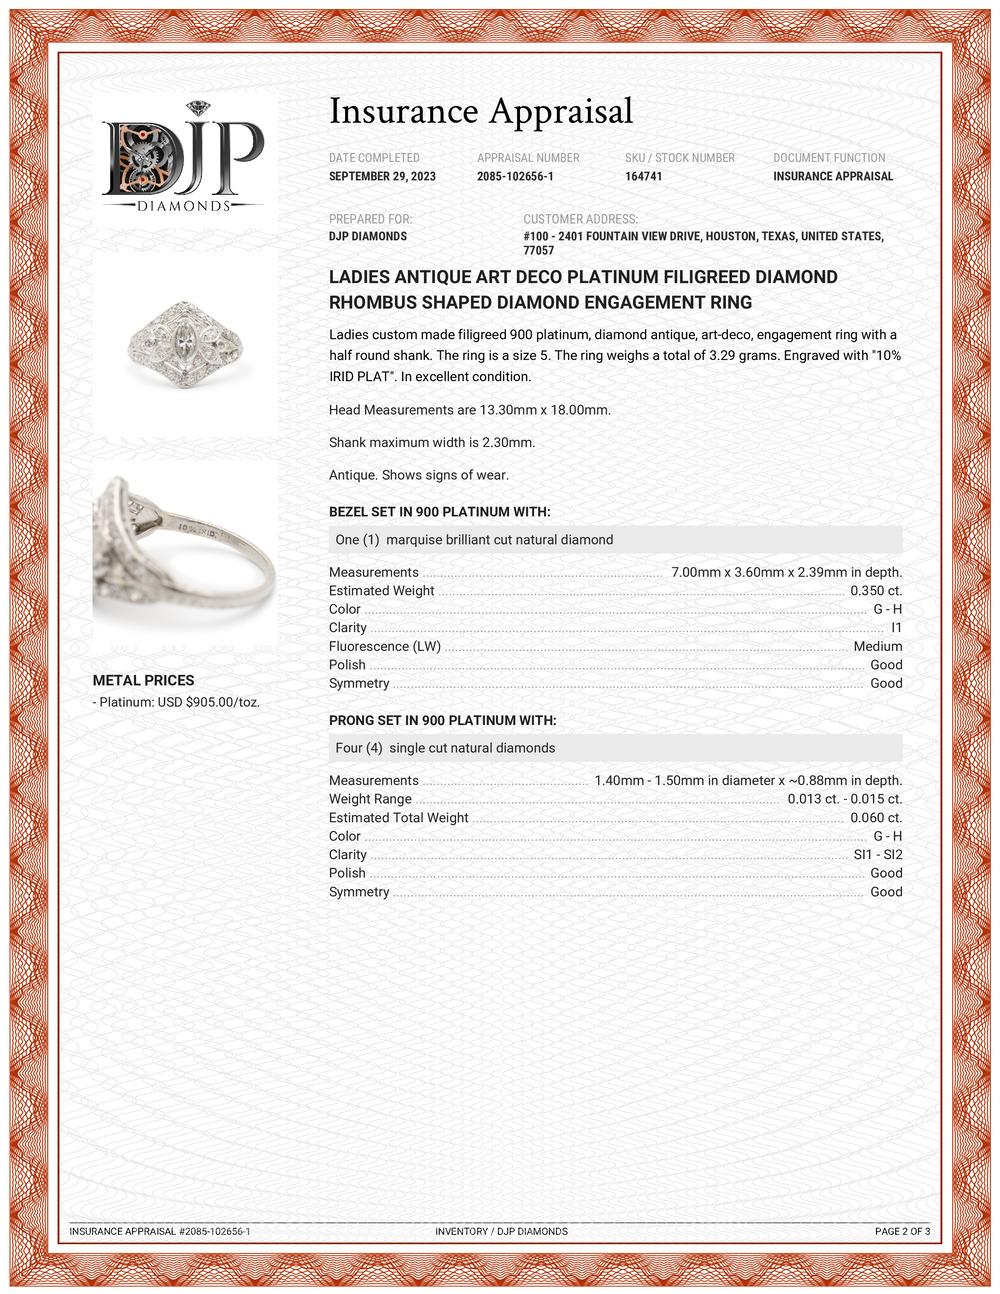 Ladies Antique Art Deco Platinum Filigreed Diamond Diamond Engagement Ring 3